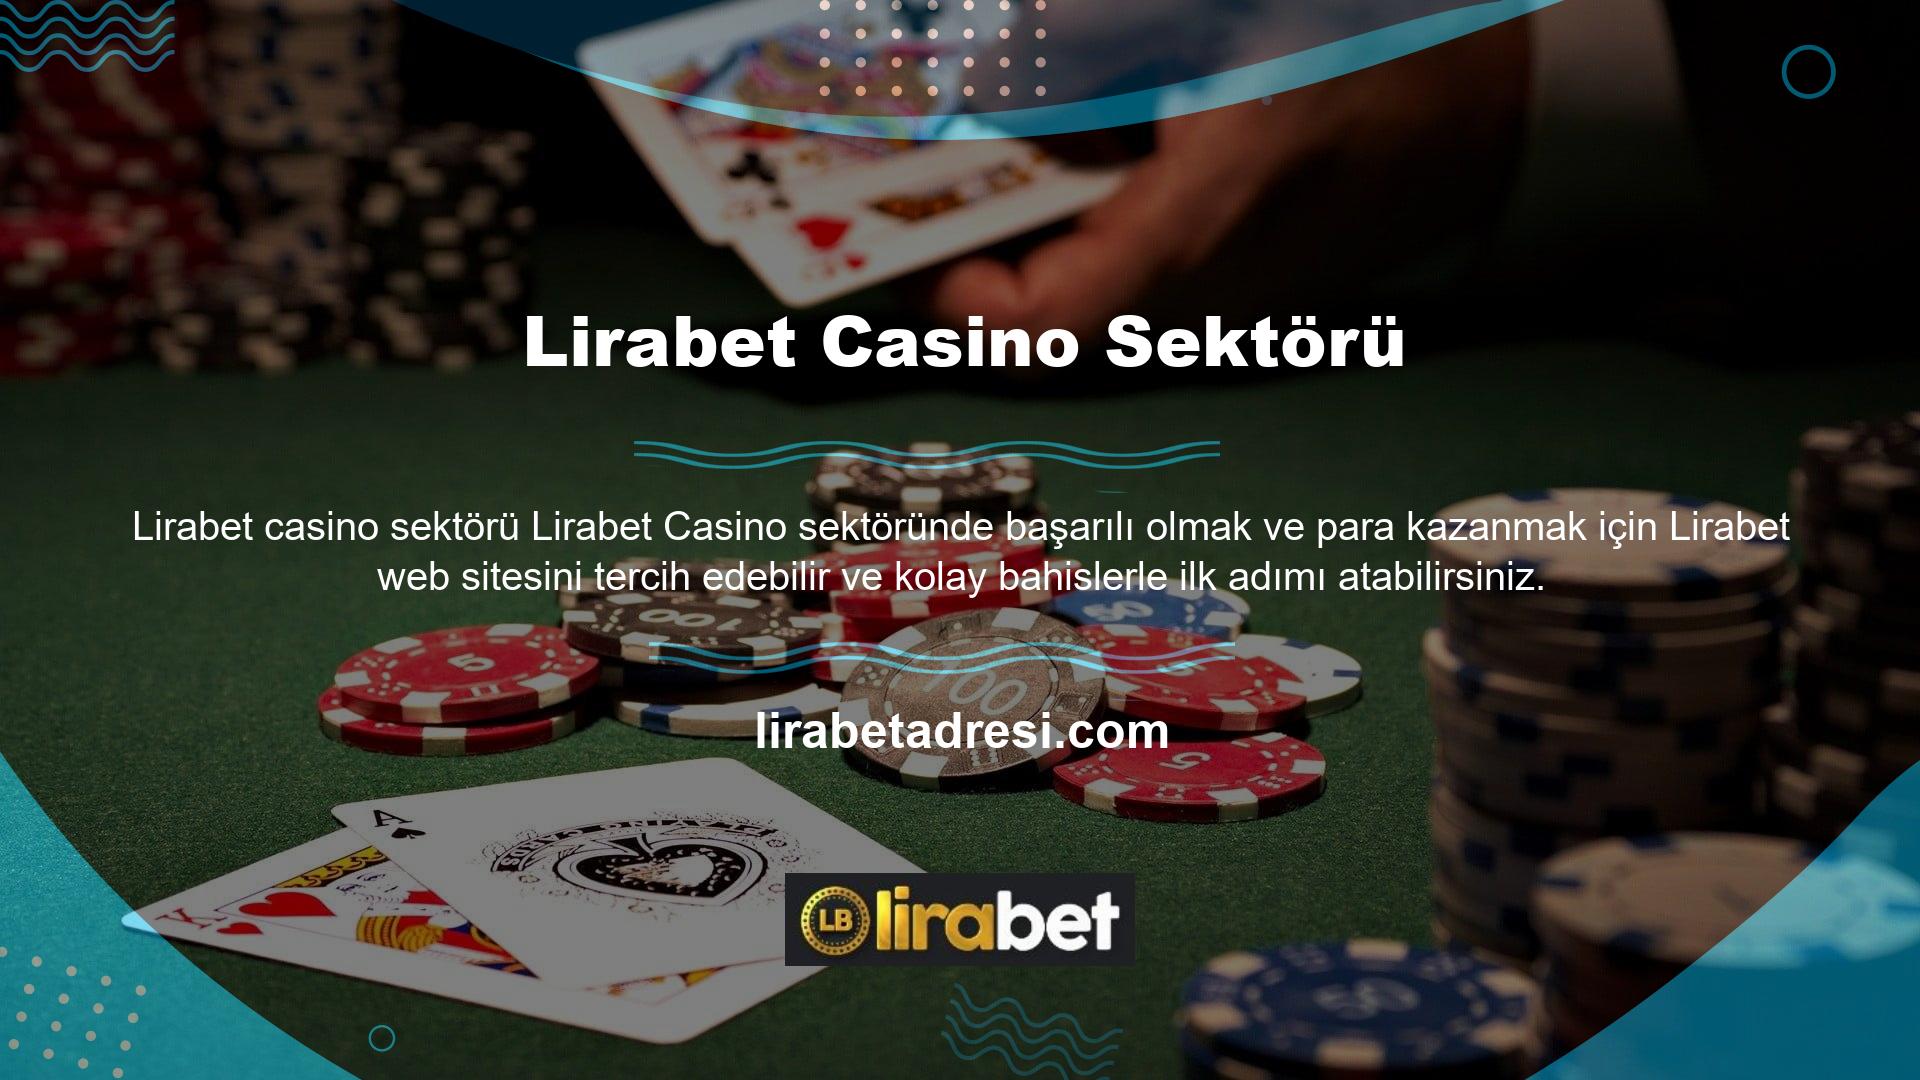 Lirabet bahis sitesi casino sektörünün en iyi bahis sitelerinden biridir